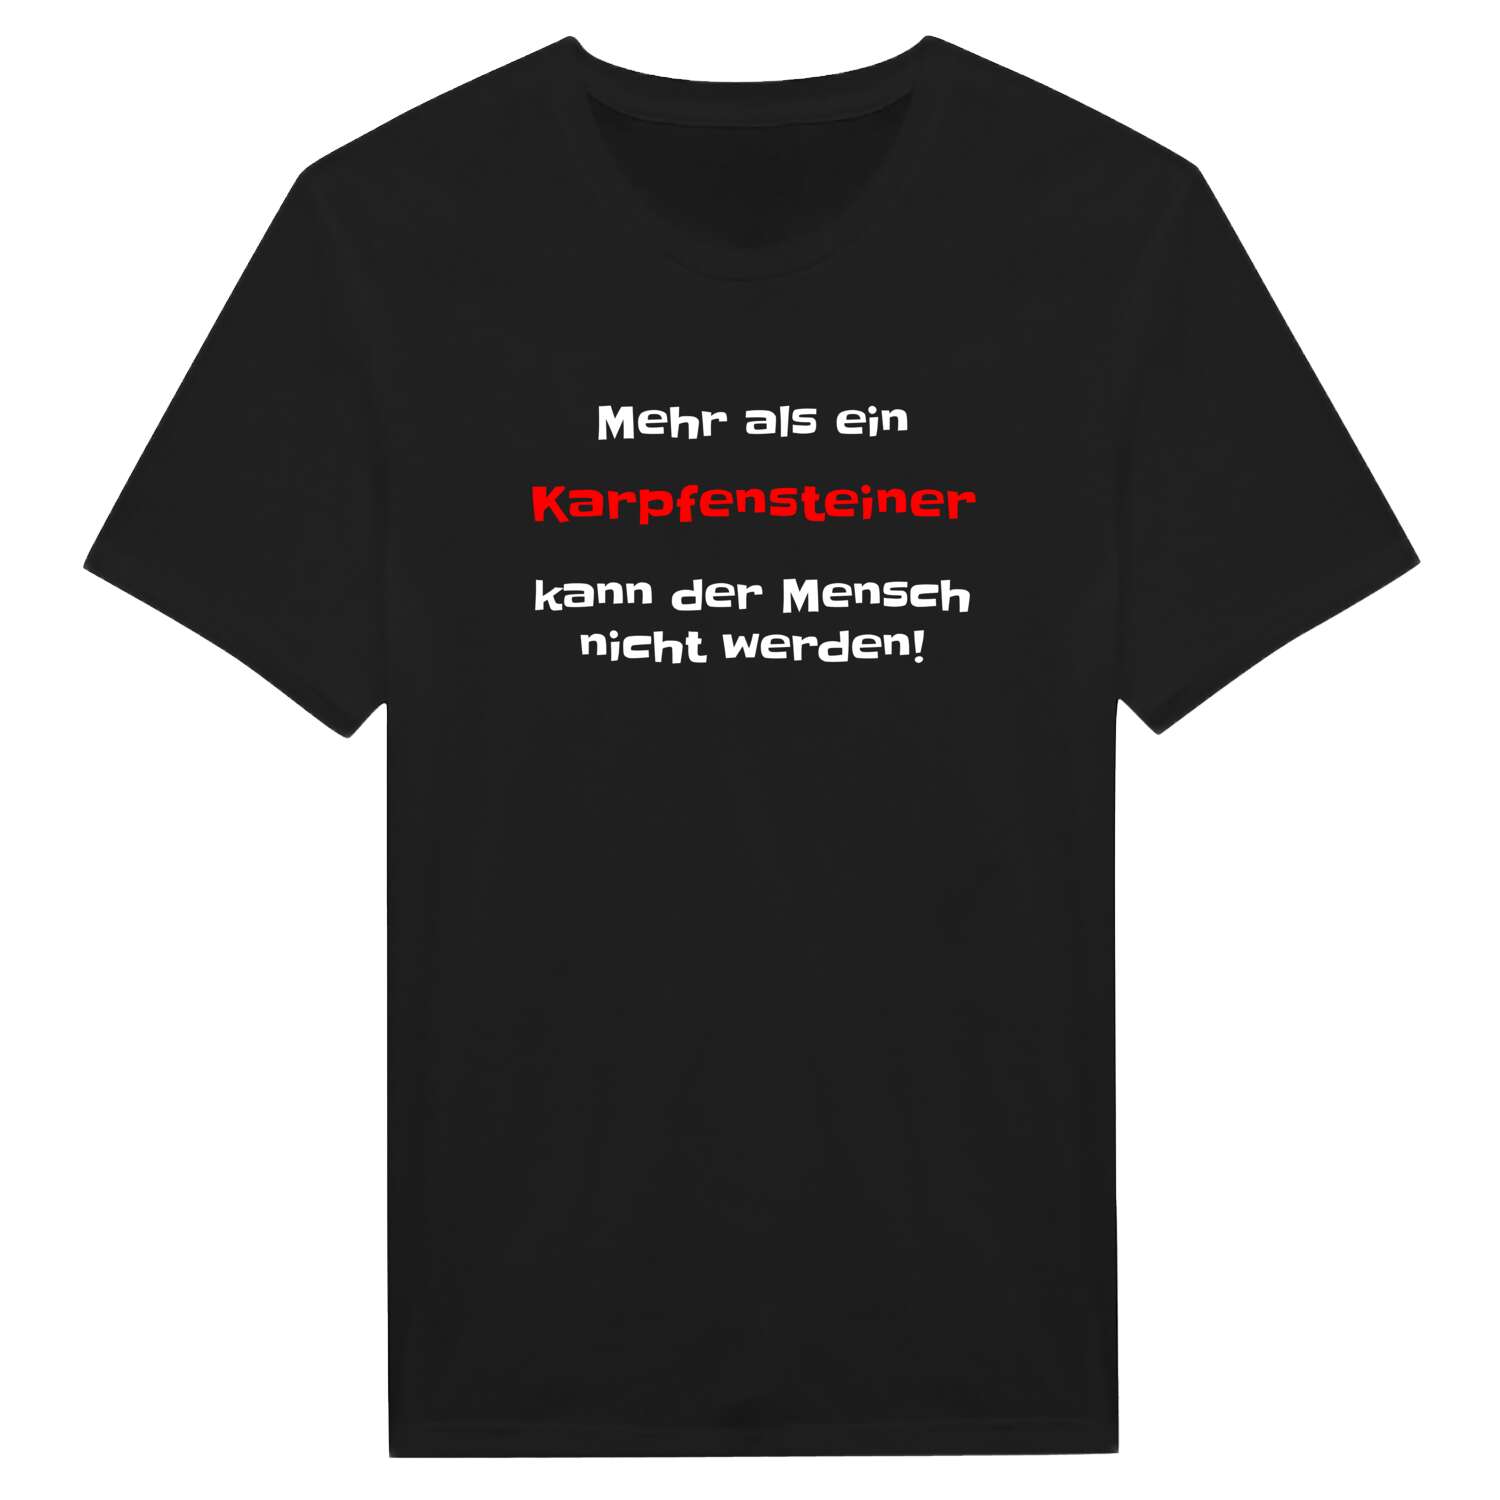 Karpfenstein T-Shirt »Mehr als ein«